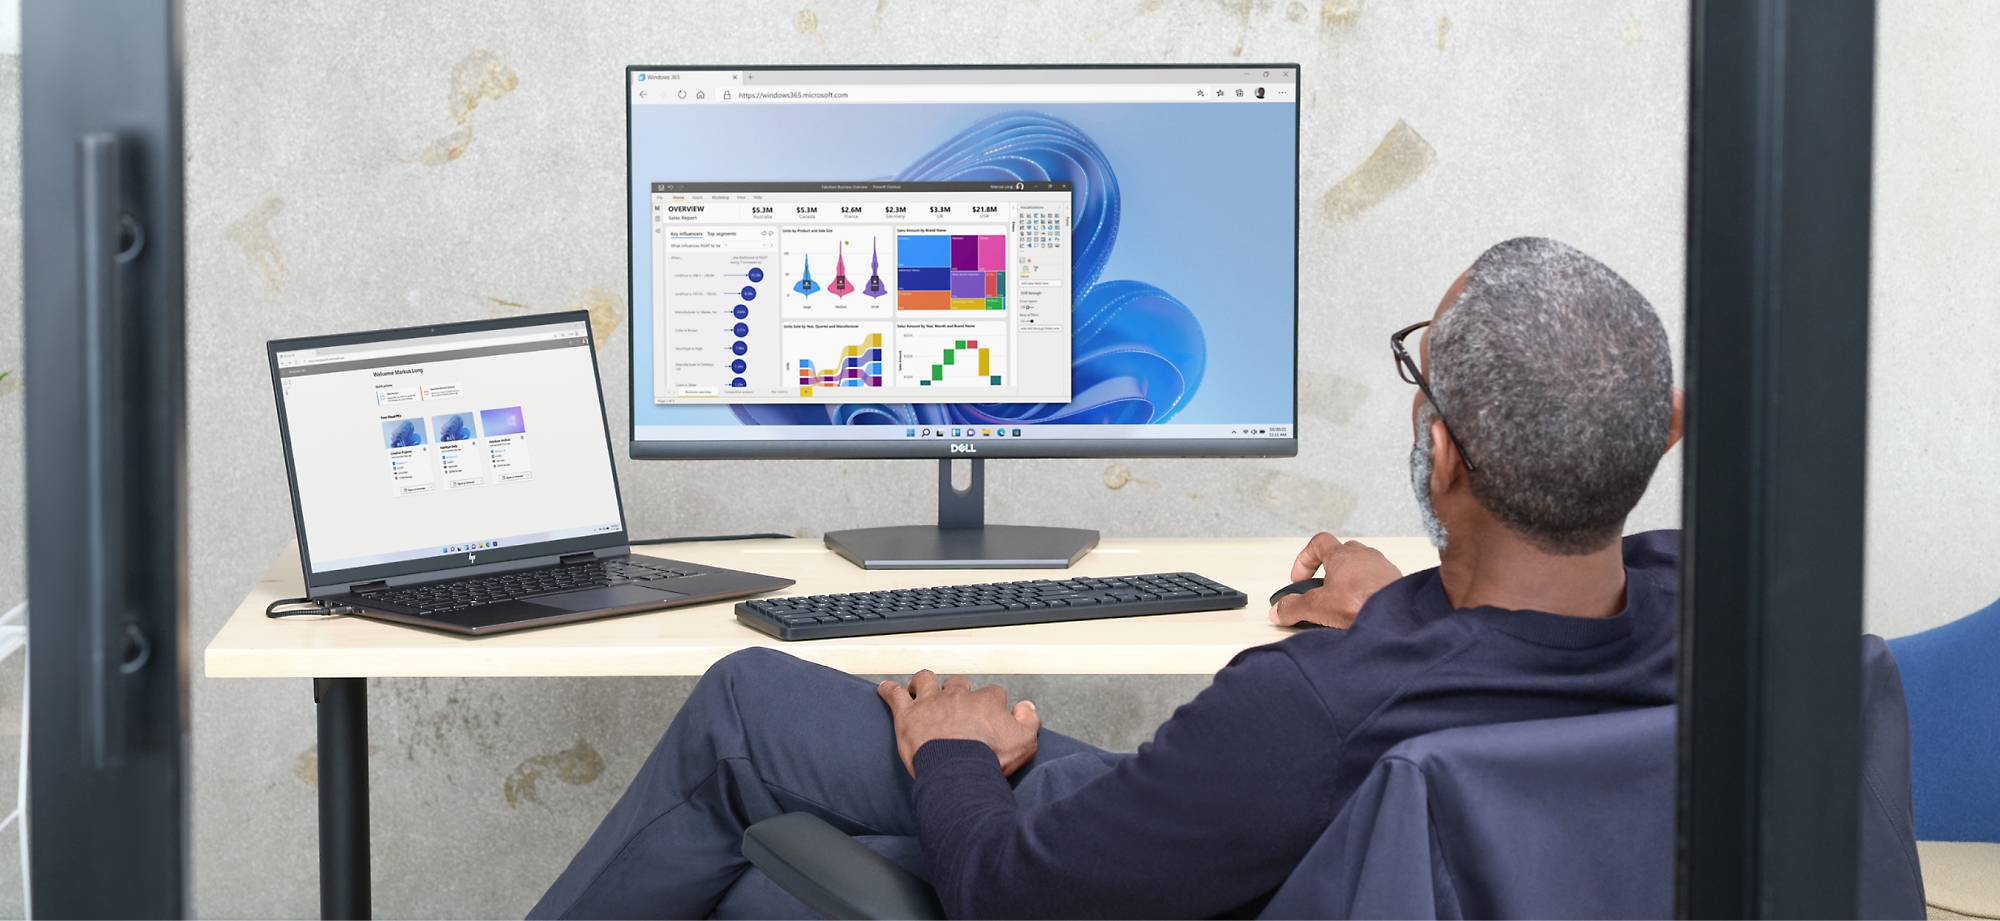 En mand gennemgår datadiagrammer på en computerskærm og en bærbar computer i kontormiljøer.